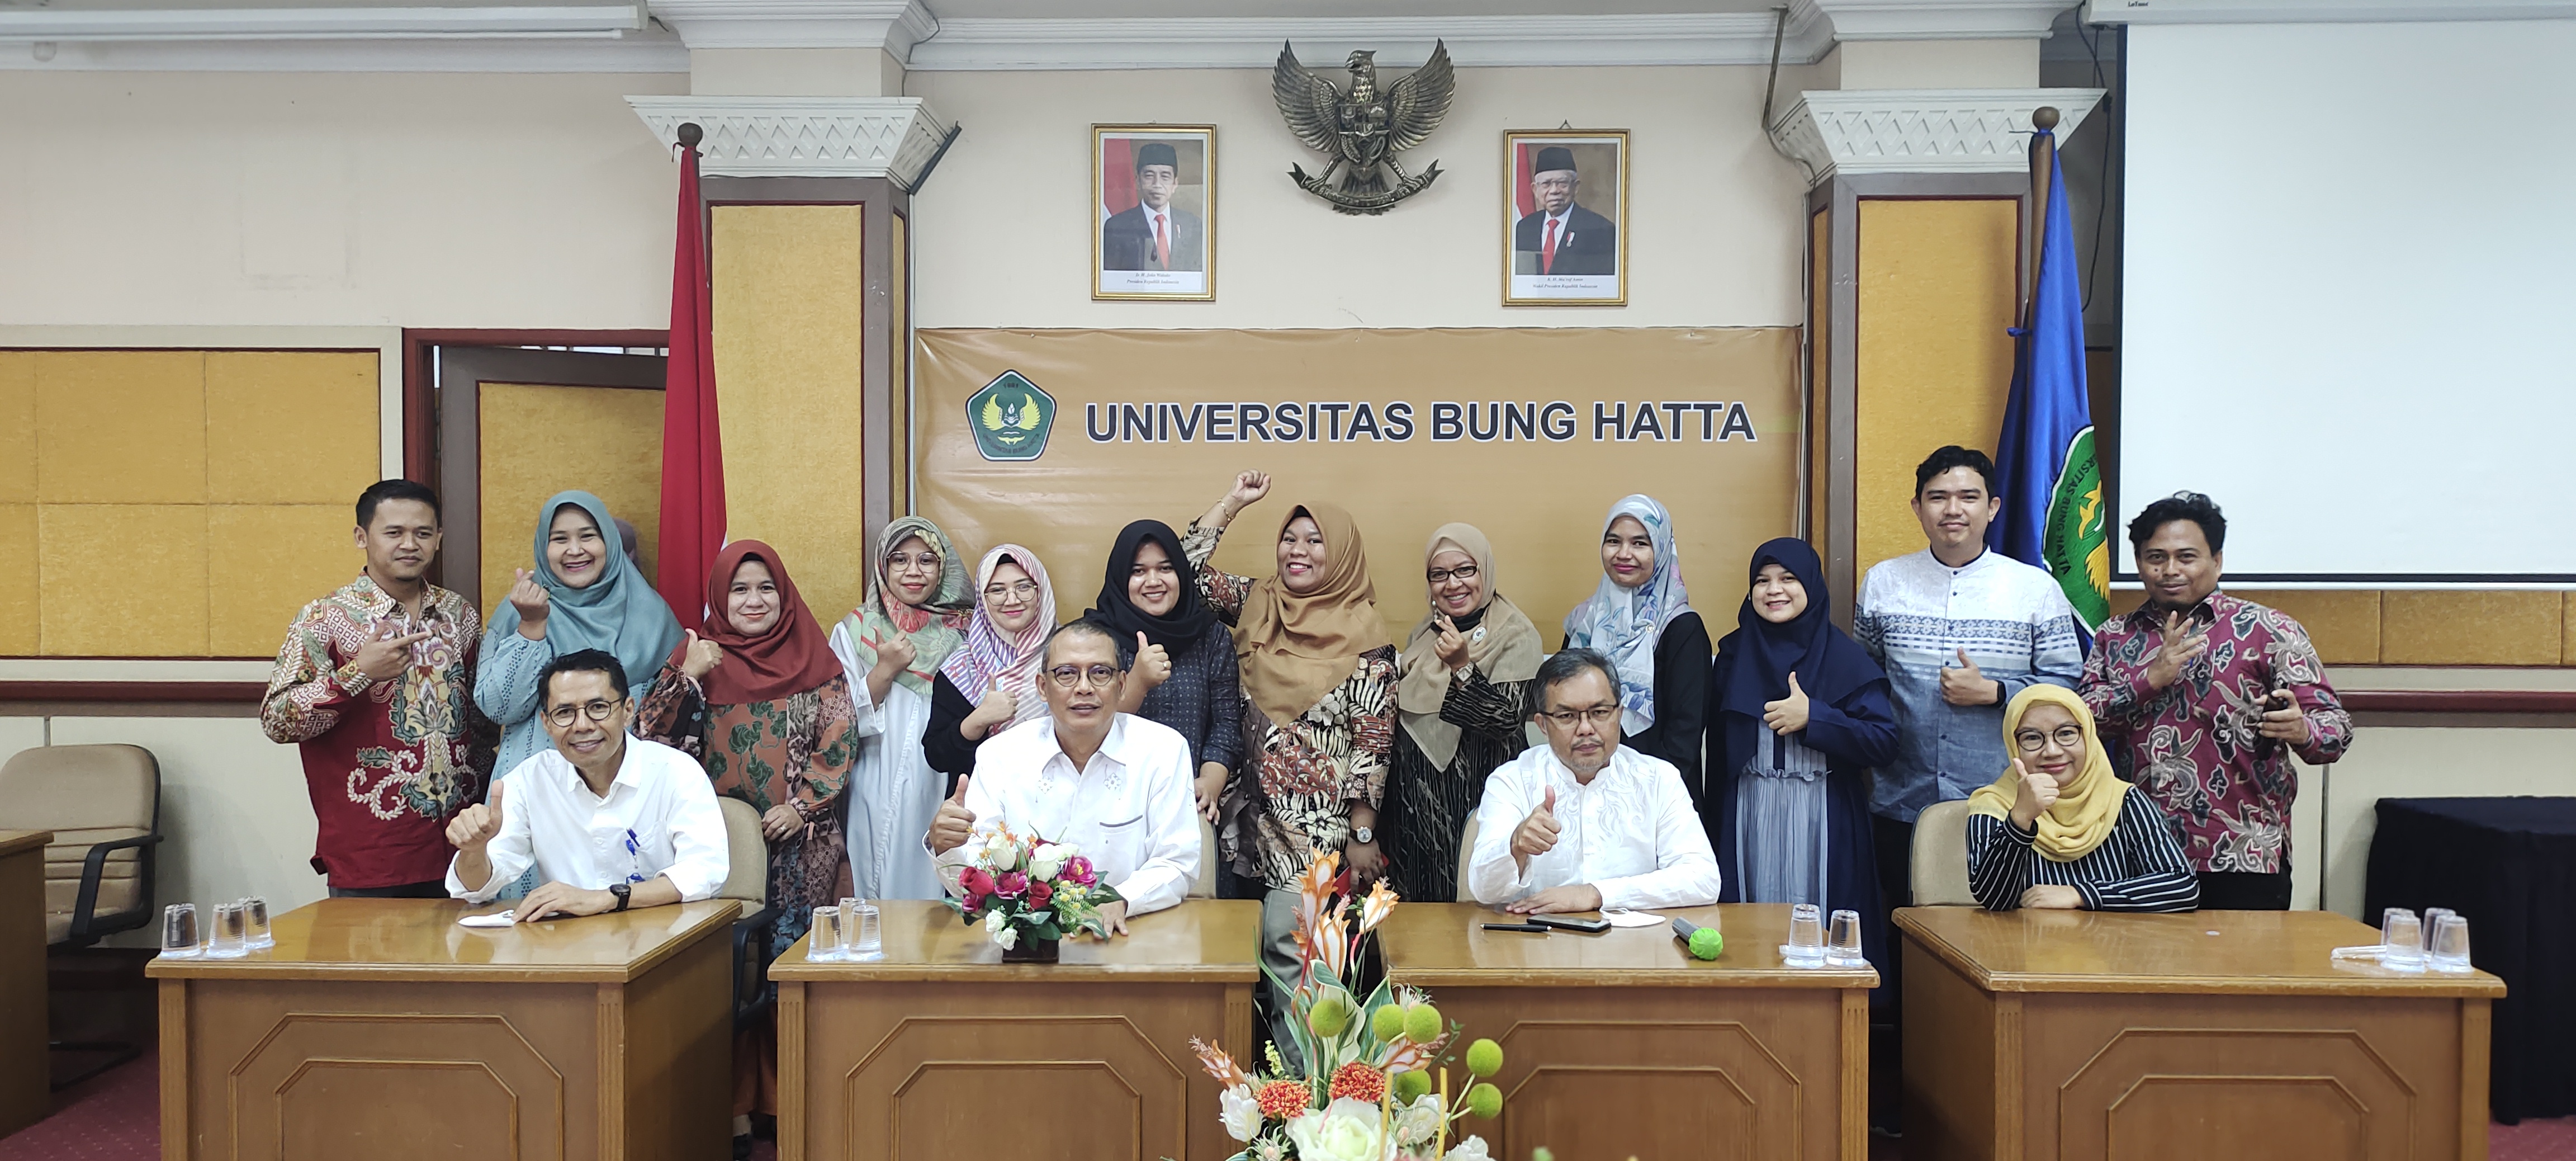 Universitas Bung Hatta Fasilitasi Dosen Ikuti Pembinaan Bahasa Inggris untuk Studi Luar Negeri